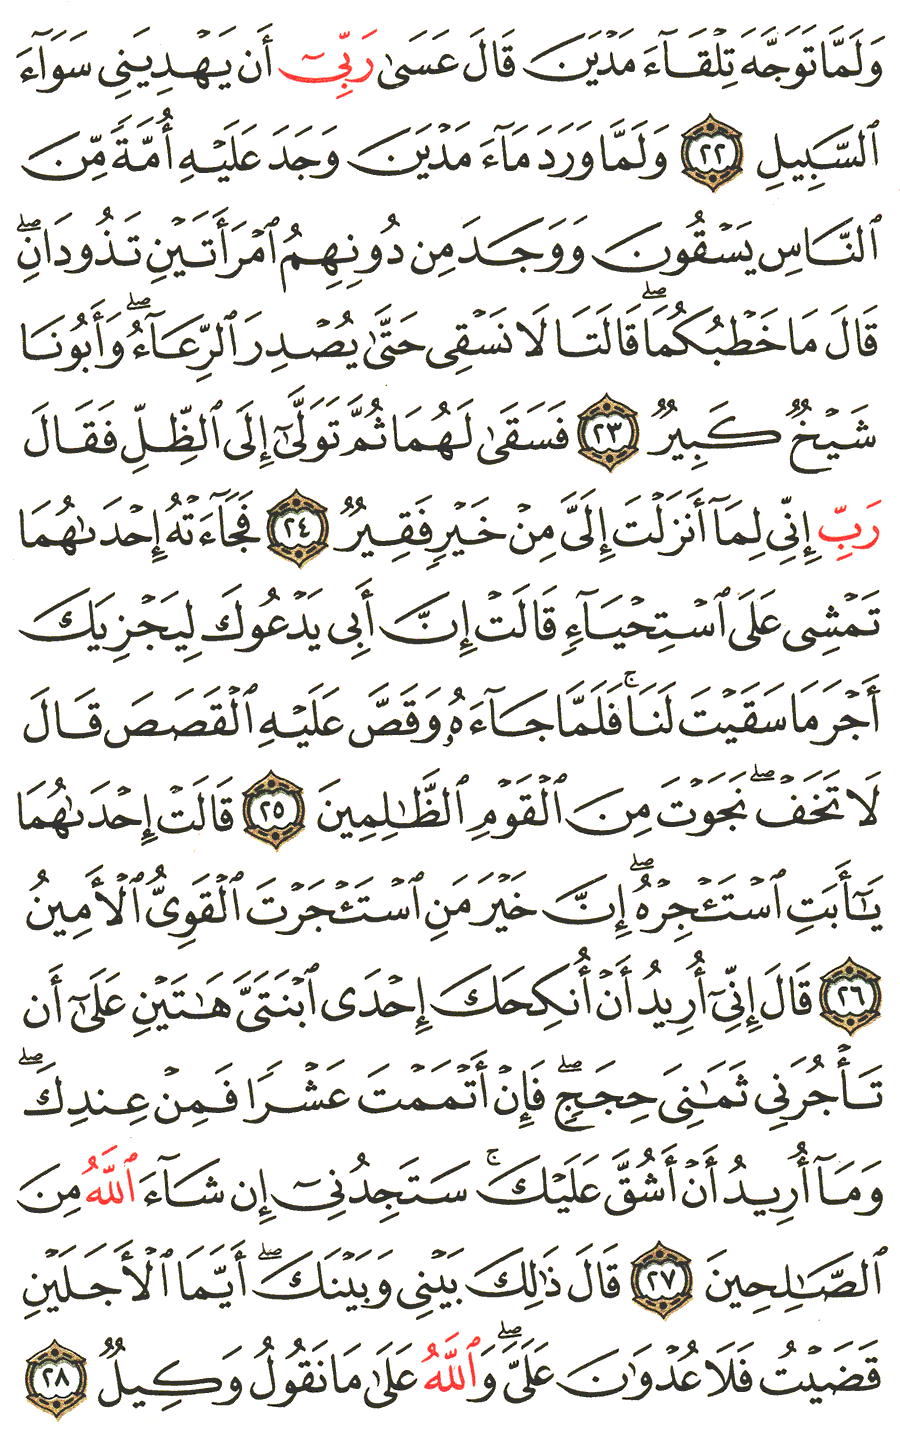 الصفحة 388 من القرآن الكريم